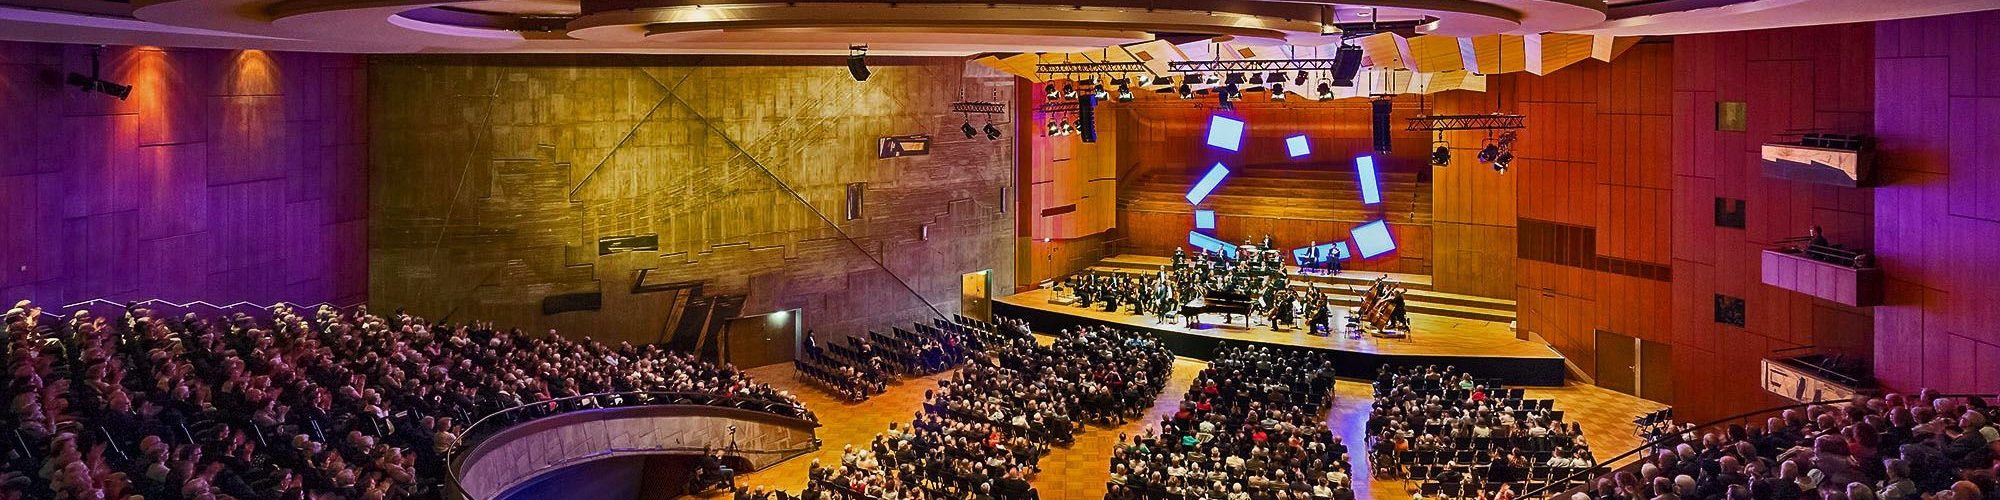 Maximilian Schairer © KKL Liederhalle ● Stuttgarter Philharmoniker 2019